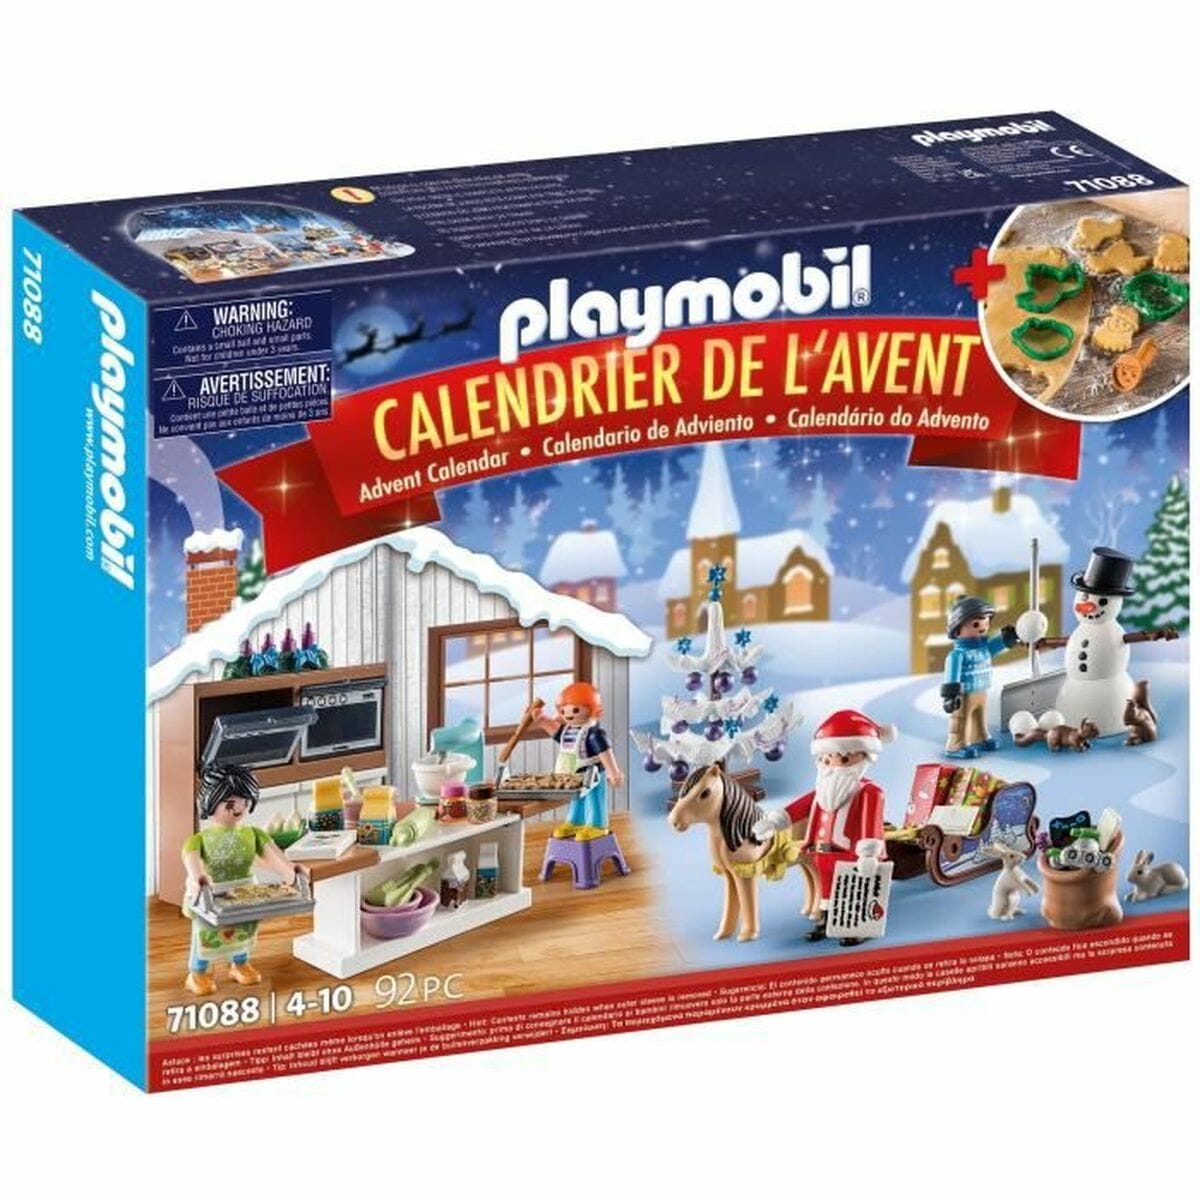 Playmobil Heim | Garten > Dekoration und Beleuchtung > Weihnachtsdekorationen Adventskalender Playmobil 71088